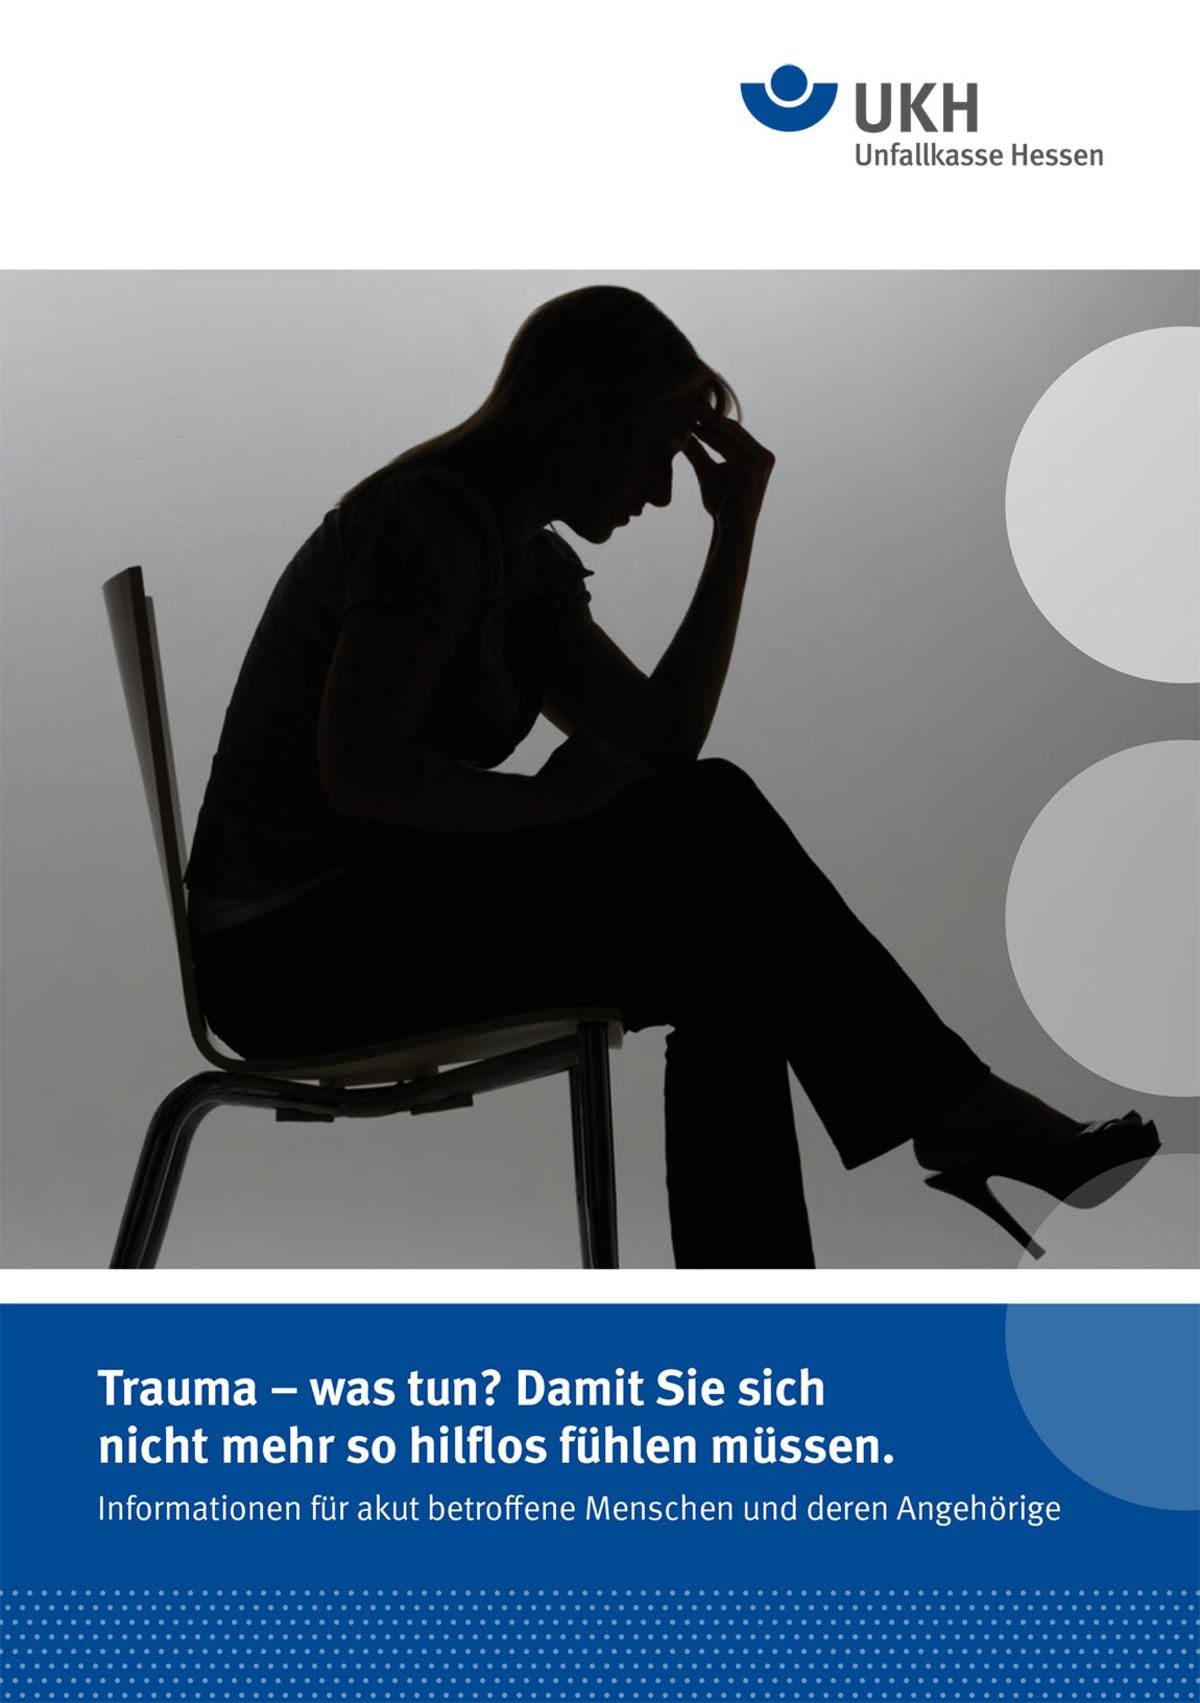 UKH Broschürentitel "Trauma – was tun? Damit Sie sich nicht mehr so hilflos fühlen müssen."